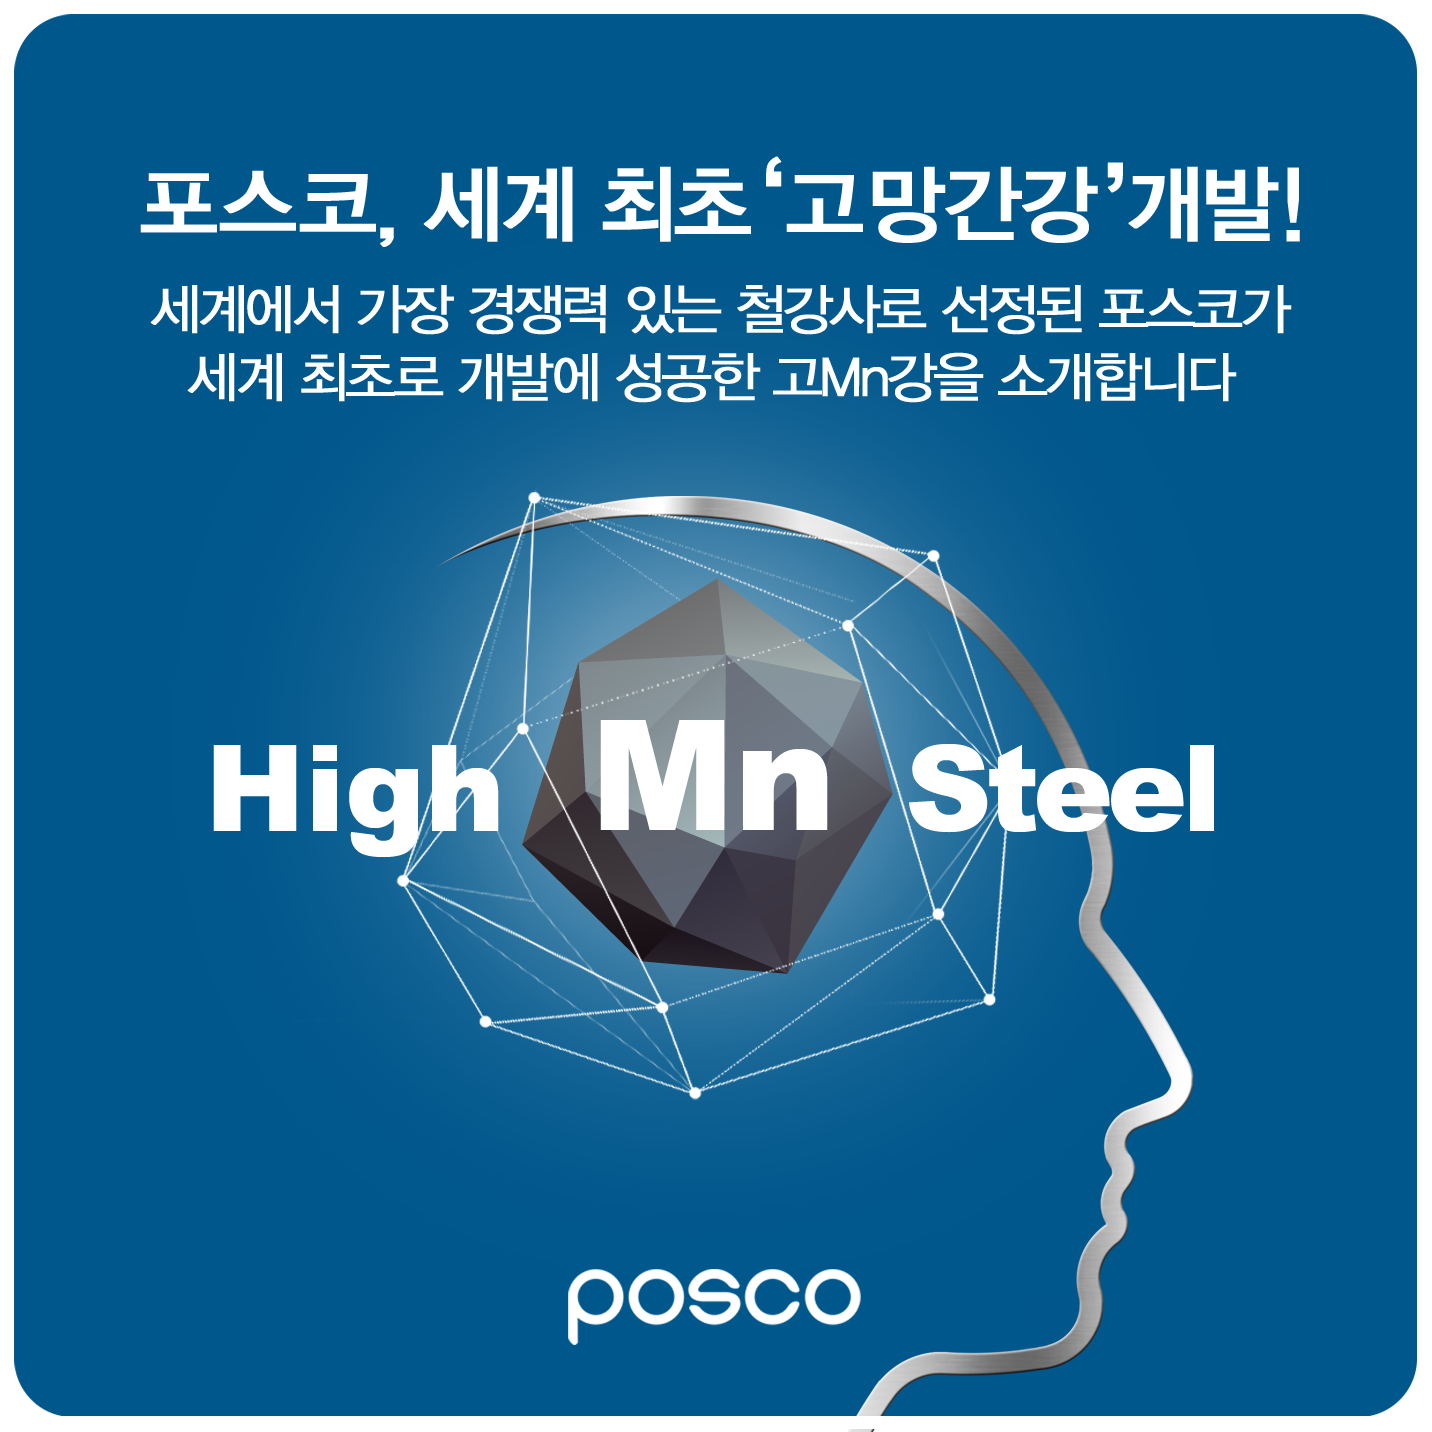 포스코, 세계 최초 '고망간강' 개발! 세계에서 가장 경쟁력 있는 철강사로 선정된 포스코가 세계 최초로 개발에 성공한 고Mn강을 소개합니다. High Mn Steel POSCO